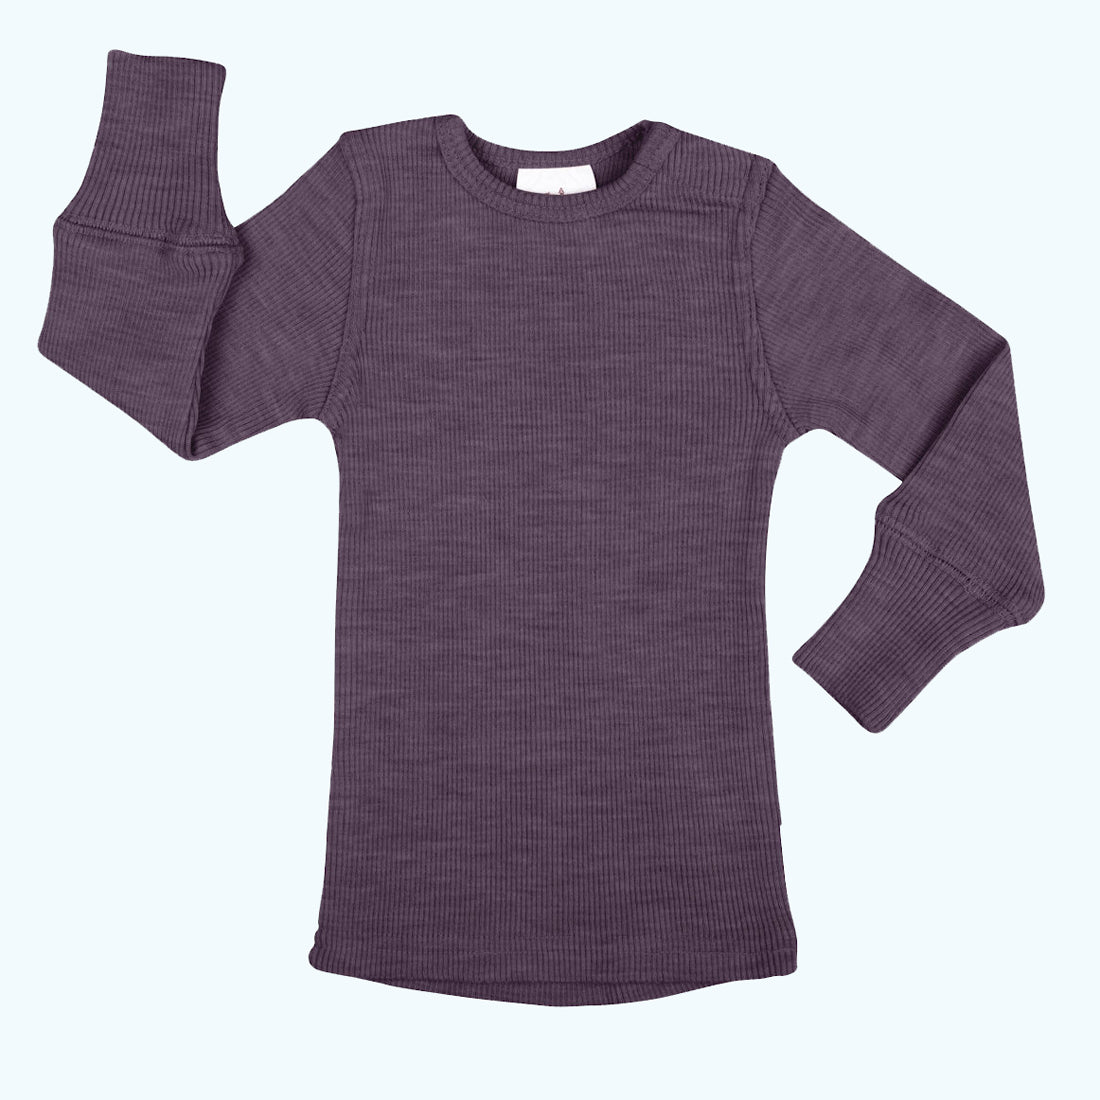  MERIWOOL Kids Unisex Long Sleeve Shirt Thermal